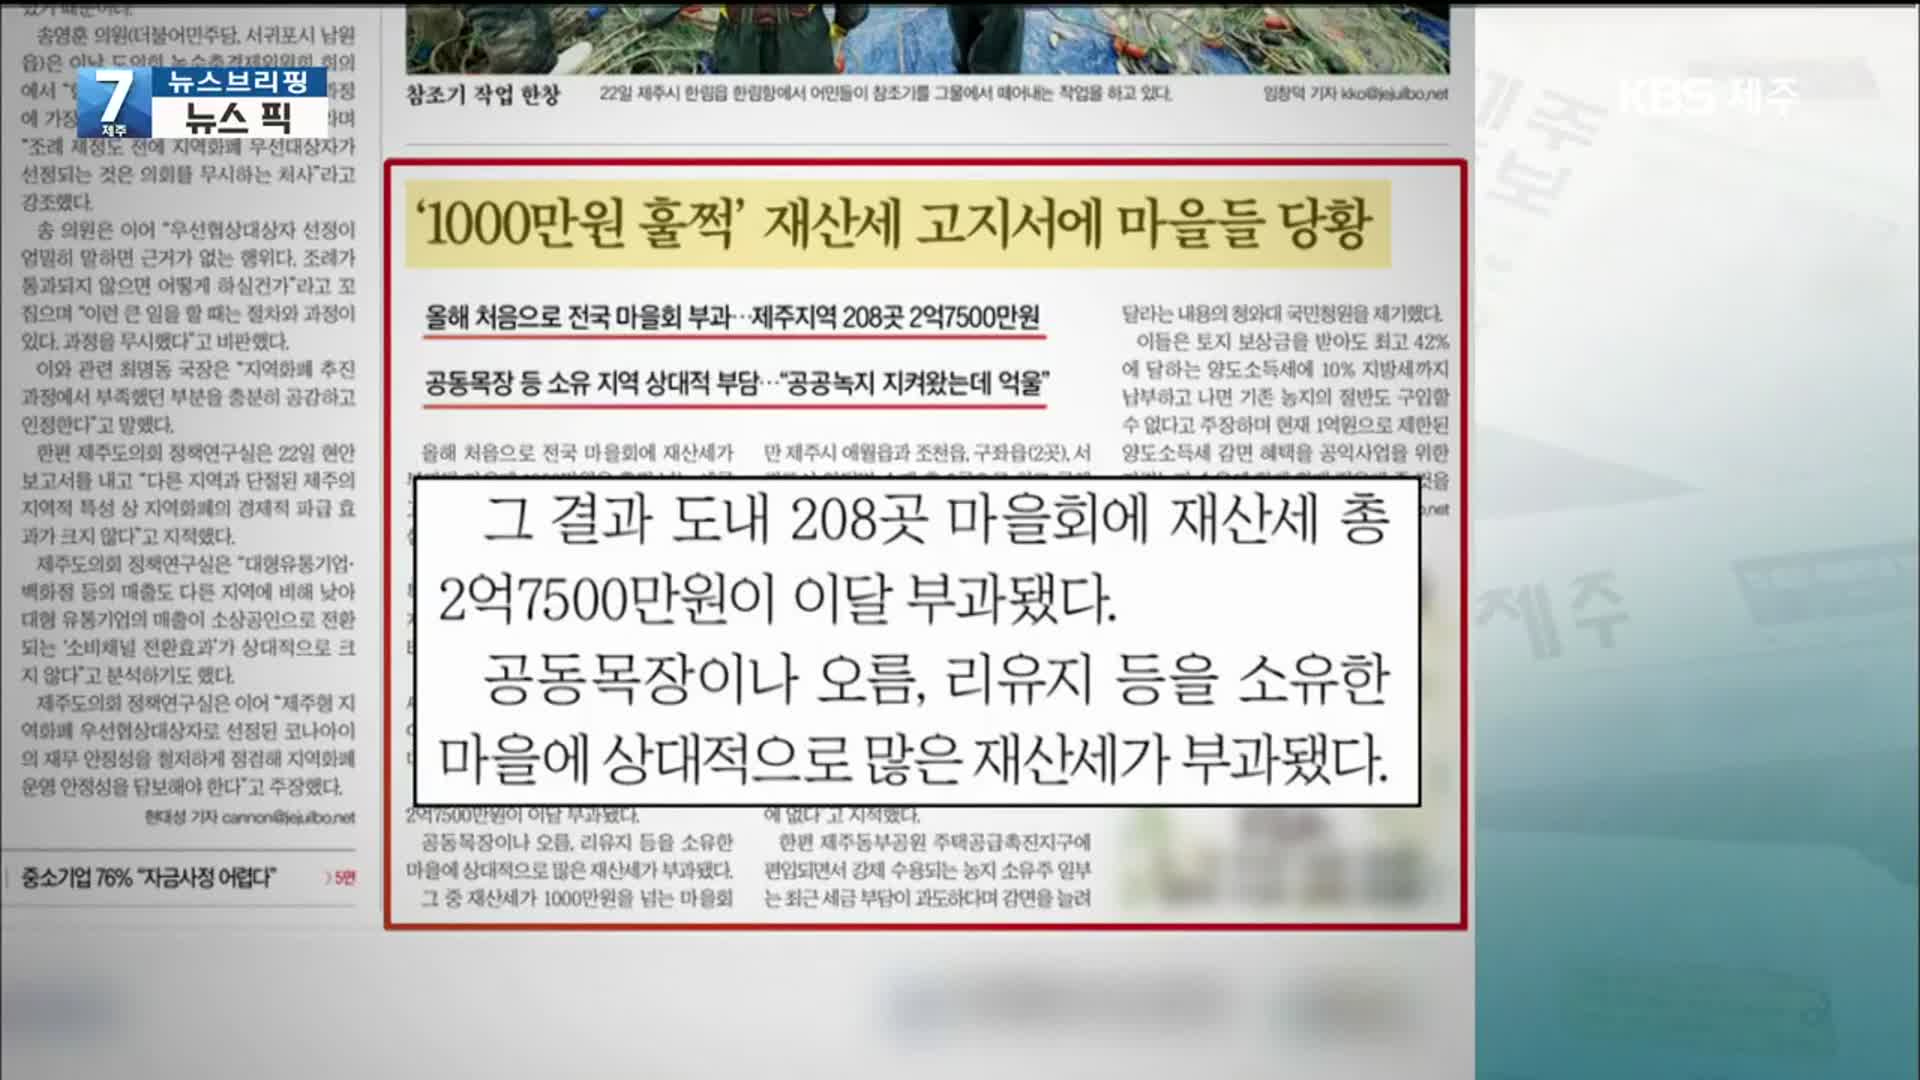 [뉴스브리핑] ‘재산세 고지서 받아든 마을들 당황’ 외